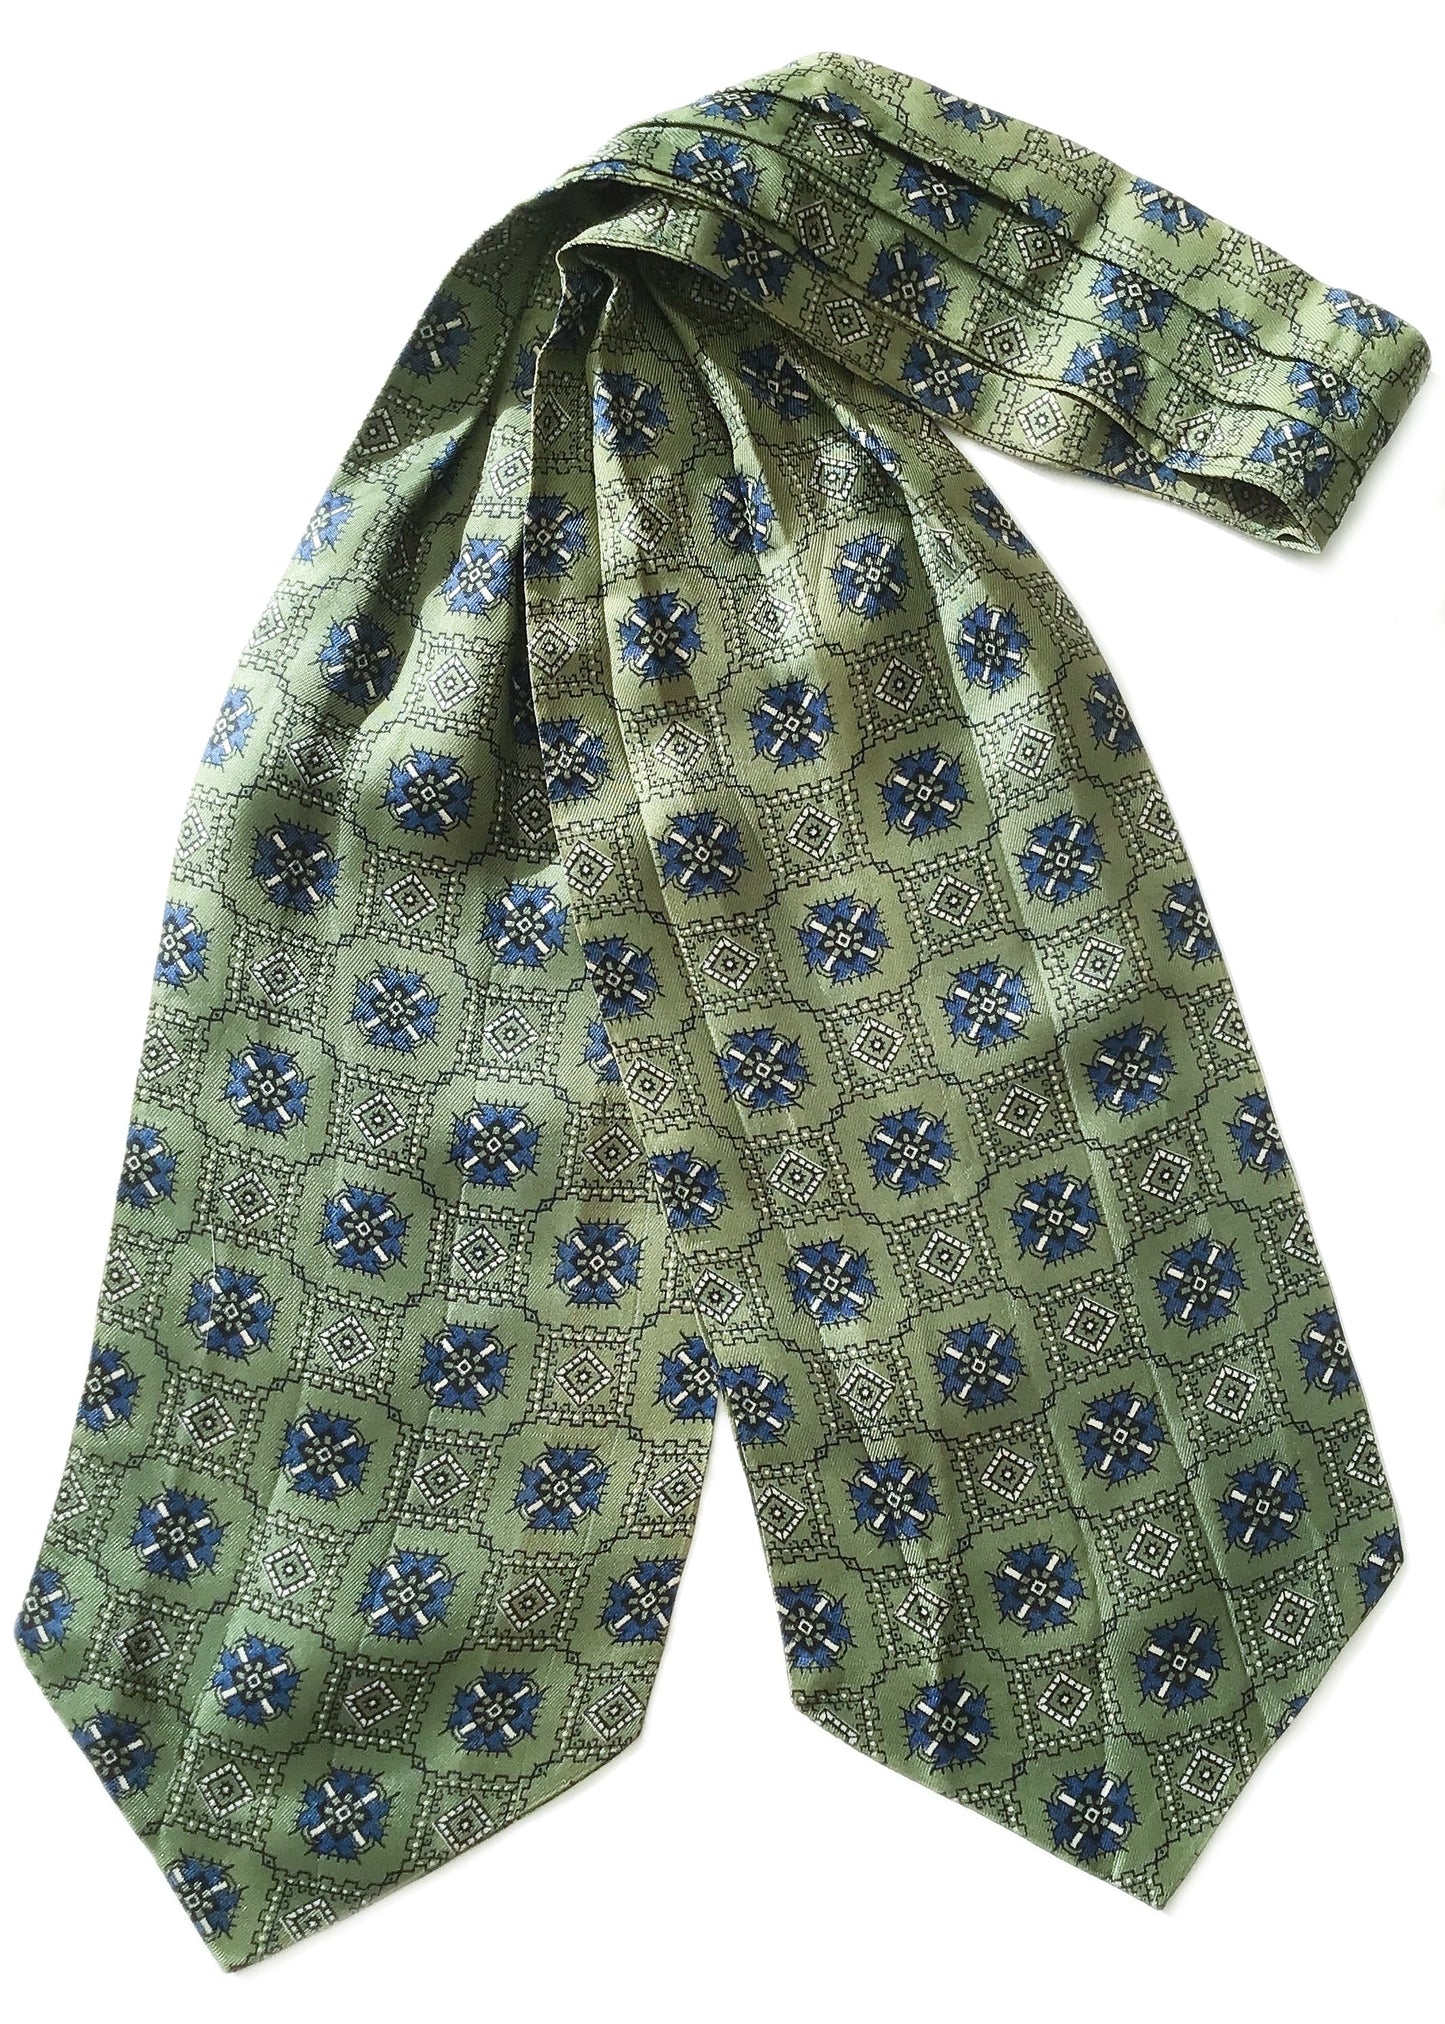 vintage green and blue patterned Sammy cravat